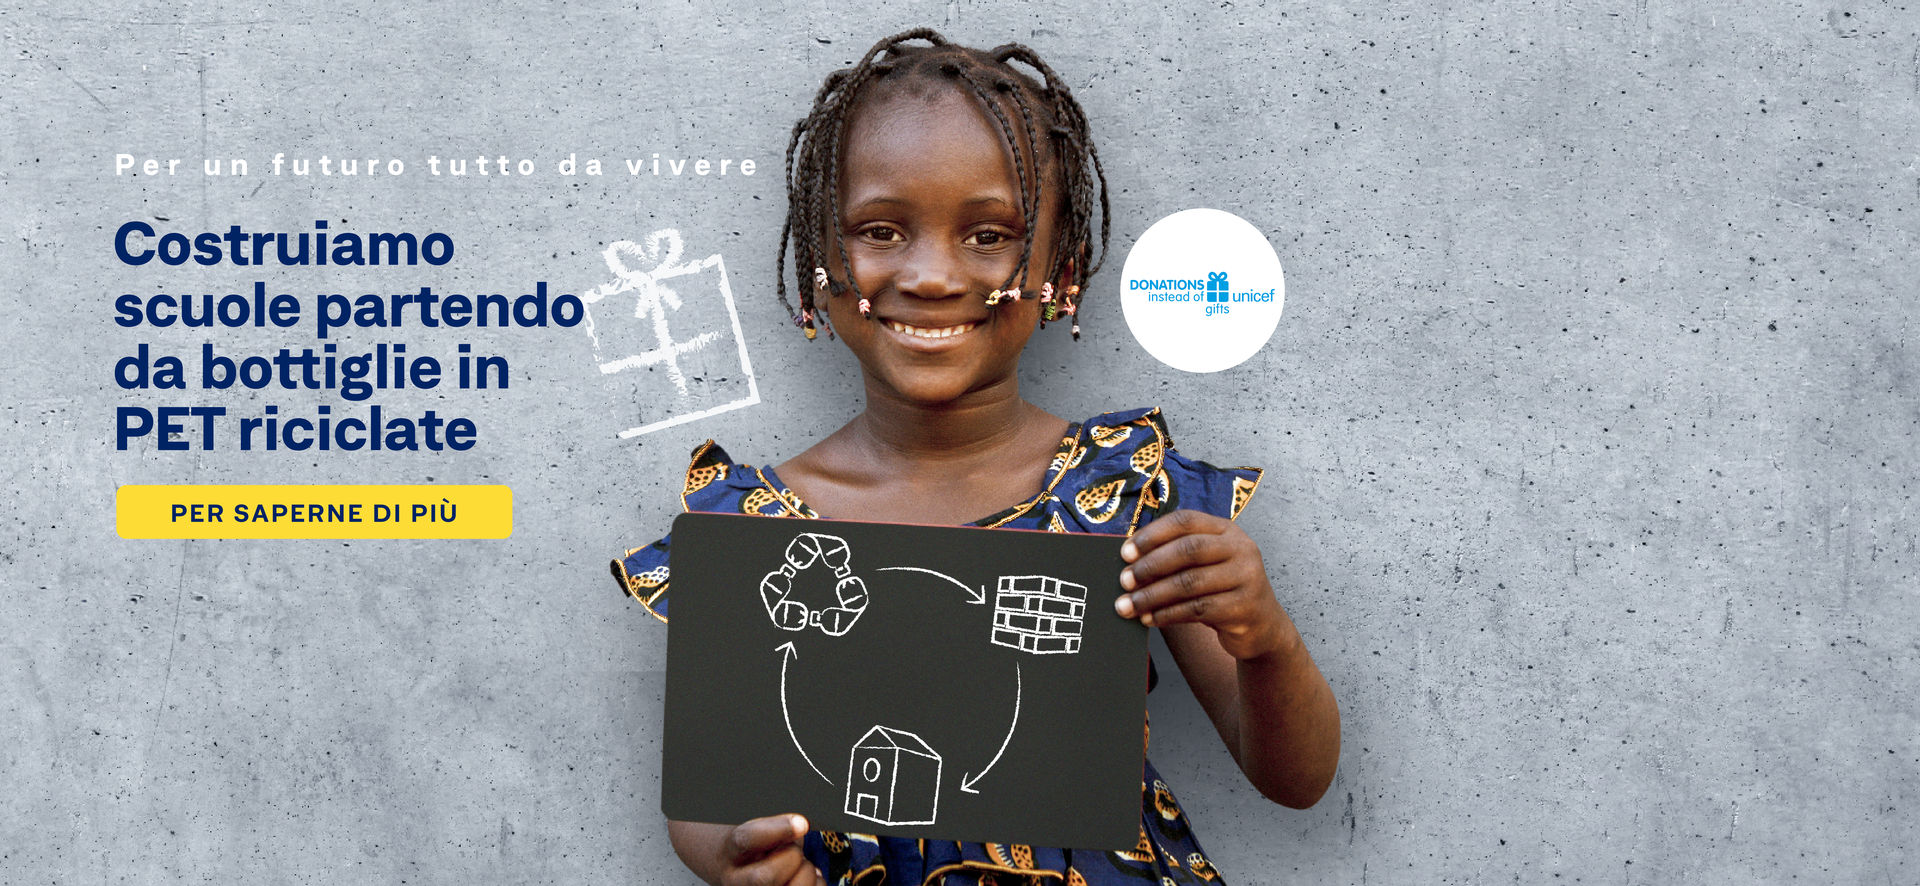 Il nostro regalo di Natale: prospettive future per bambini e famiglie della Costa d’Avorio 
